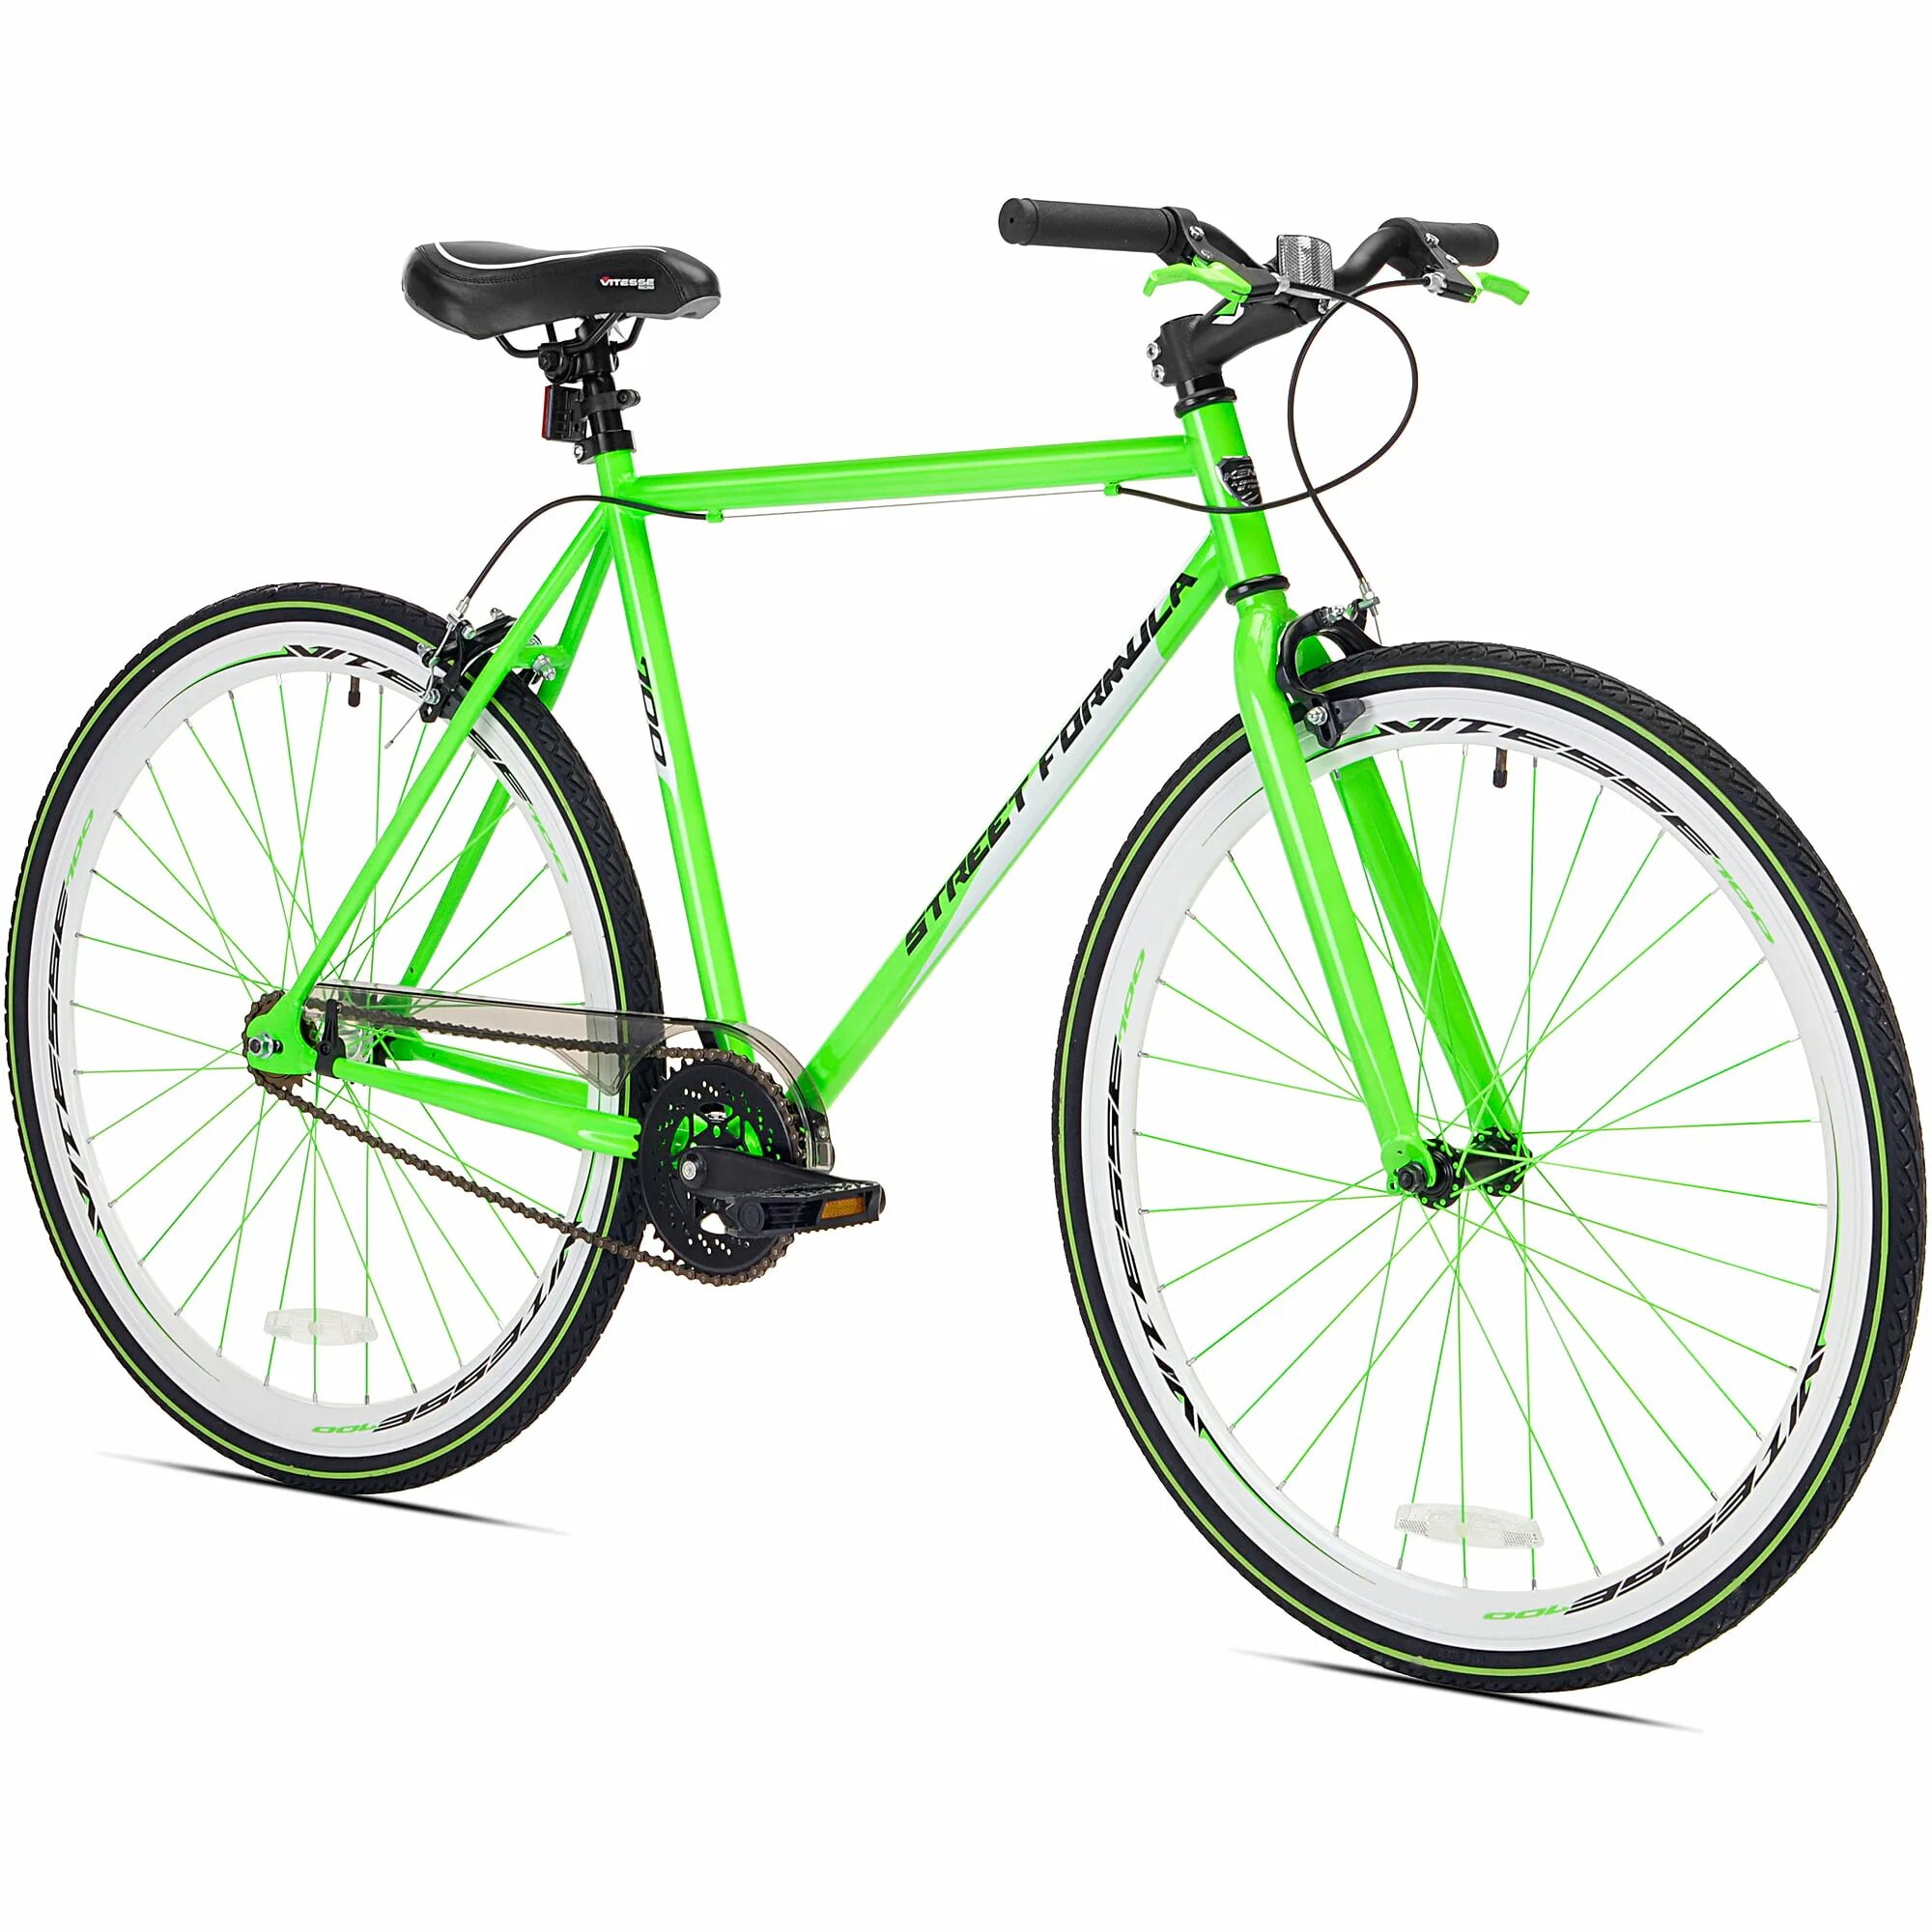 Велосипед в цветах зеленый. 700c Road Bike. Велосипед Green MTB. Велосипед Energy Bike 1.0 зеленый. Велосипед Green спорт Bike.